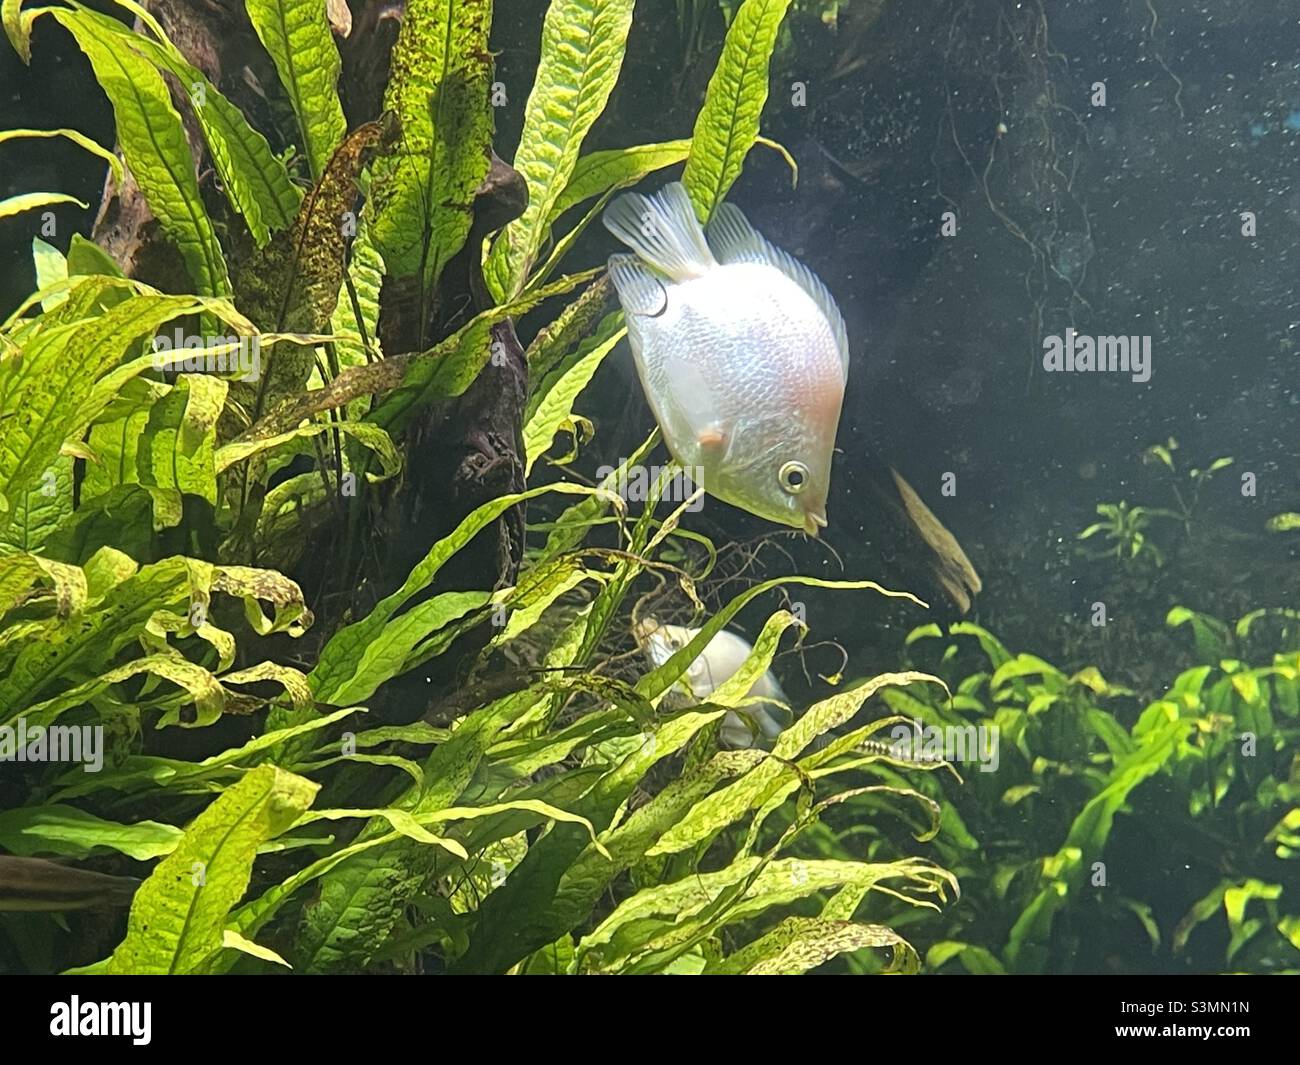 White fish in a saltwater aquarium Stock Photo